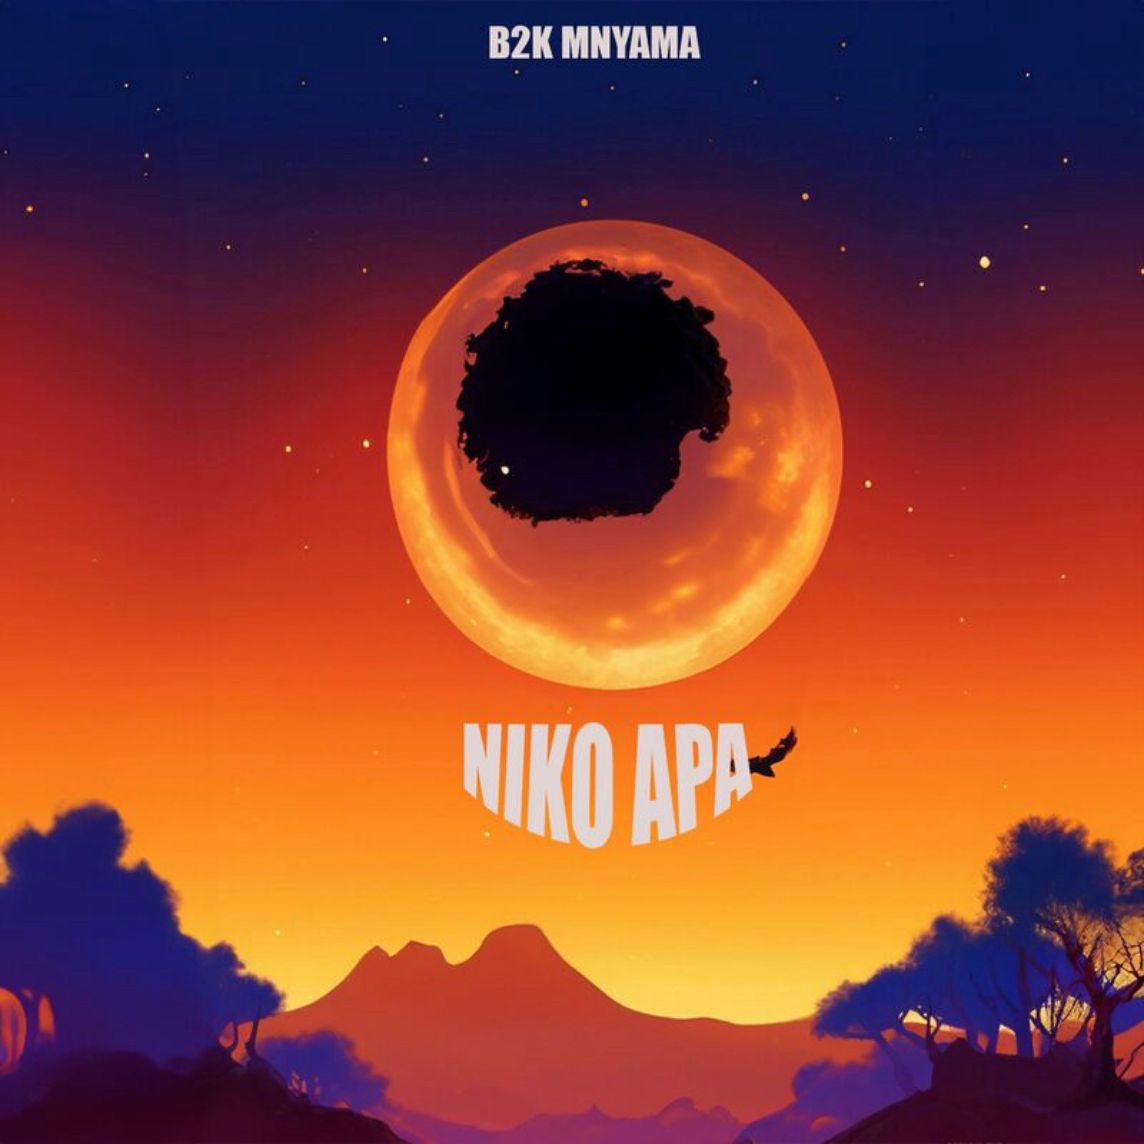 Download Audio | B2k Mnyama – Niko Apa